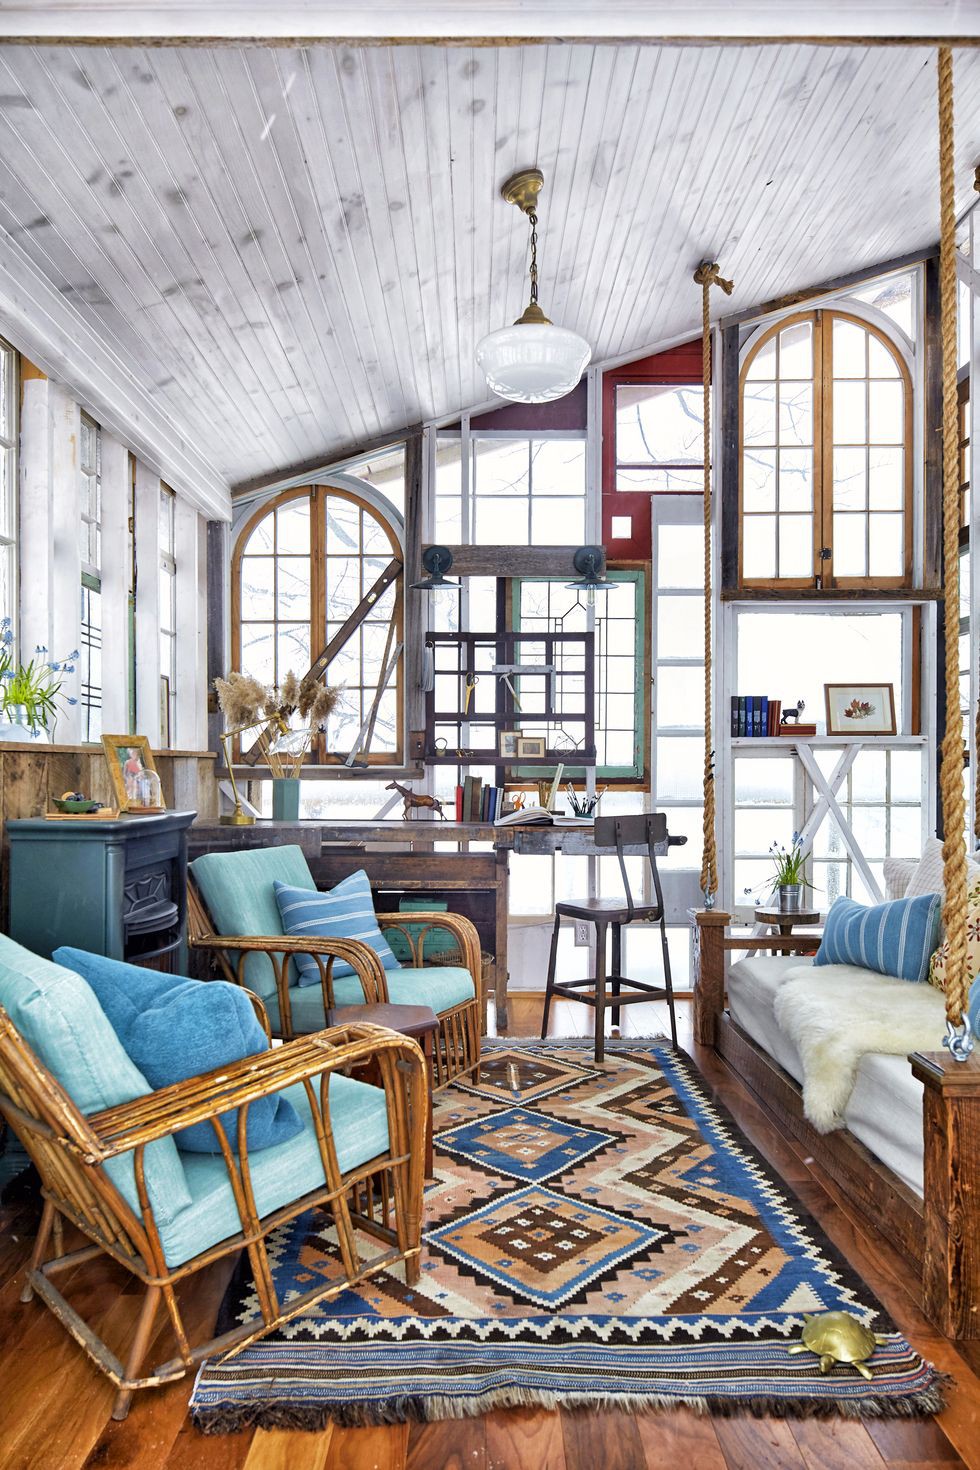 Hình ảnh bên trong ngôi nhà nhỏ làm từ khung cửa sổ cũ với ghế ngồi bằng mây lót nệm xanh dương, giường gỗ ngay cạnh, tủ kệ lưu trữ, bàn ghế, thảm trải sàn màu sắc